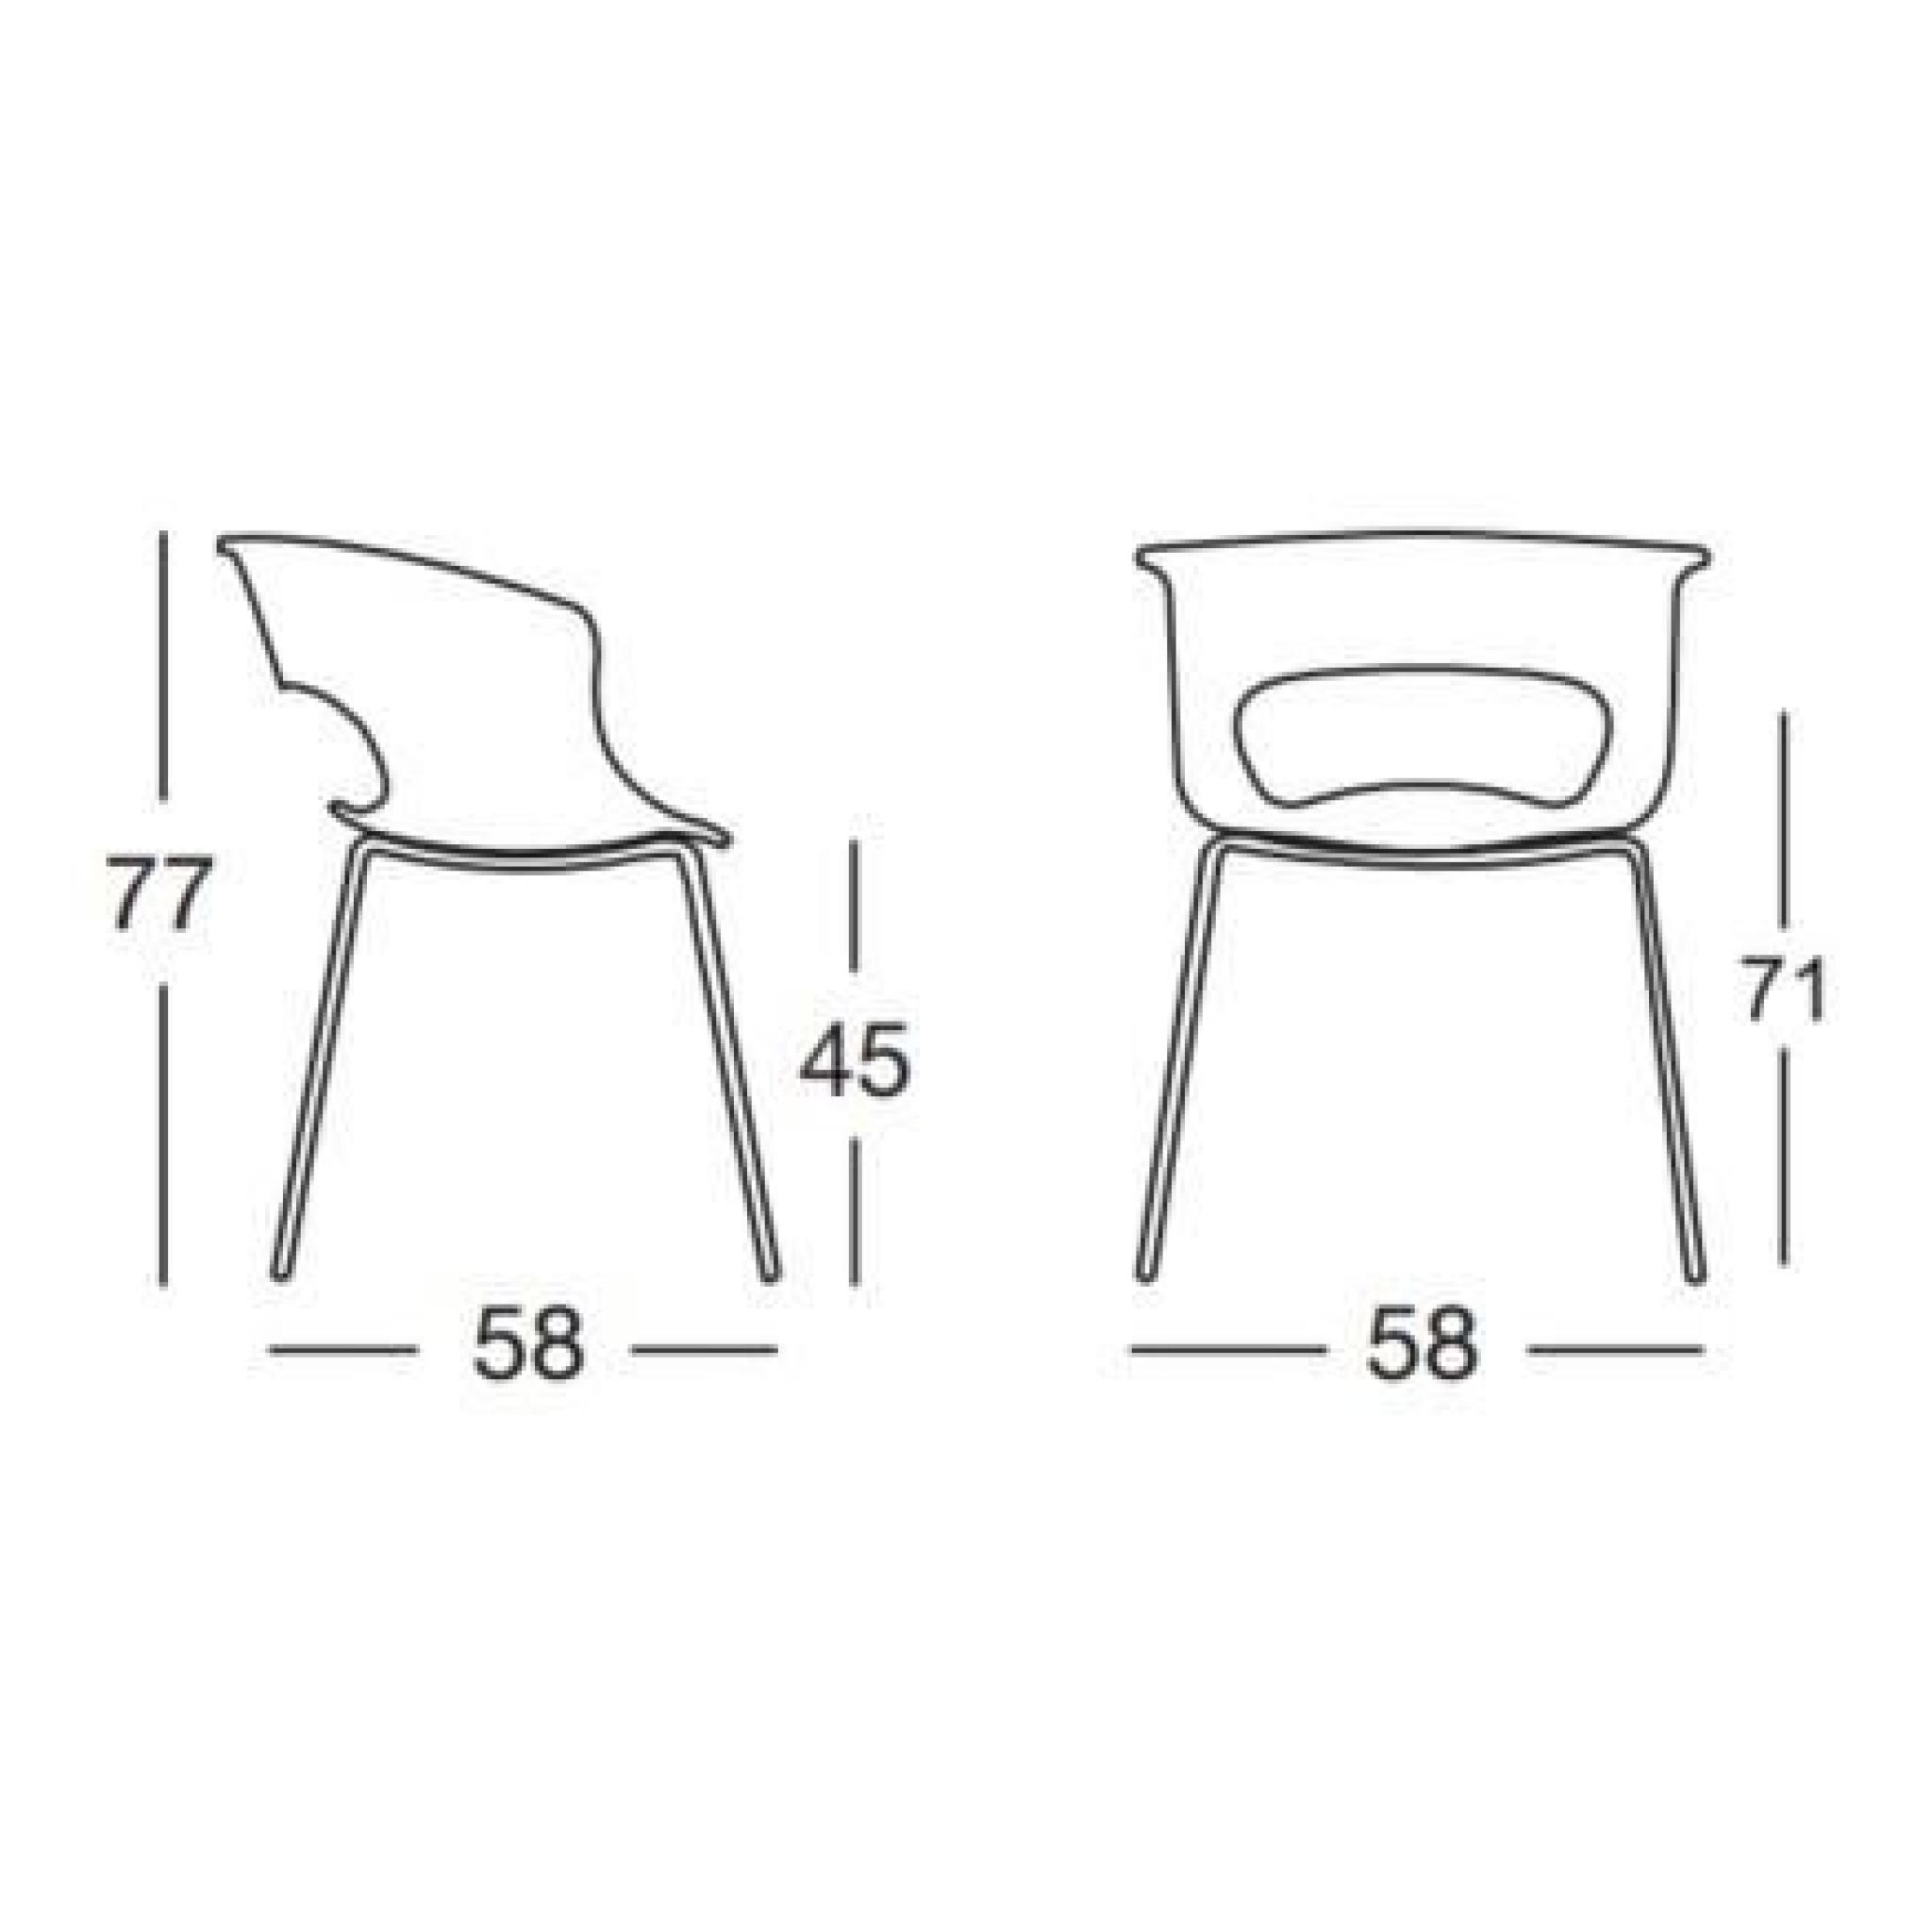 Chaise design - MISS B ANTICHOCK 4 legs - deco Orange transparent pas cher